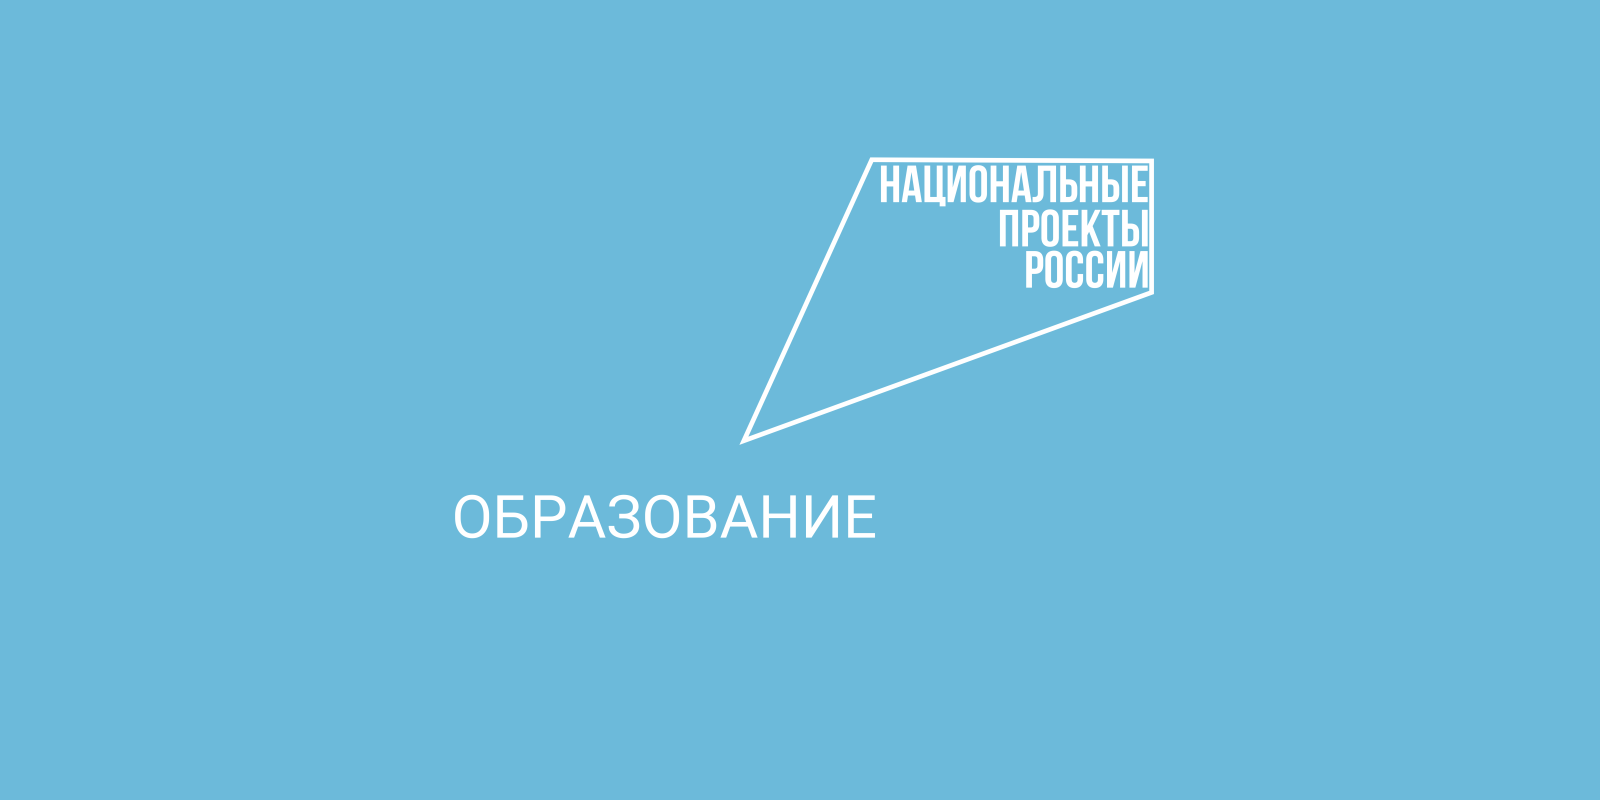 Вологодских педагогов приглашают принять участие в национальной премии по профориентации «Россия - мои горизонты».